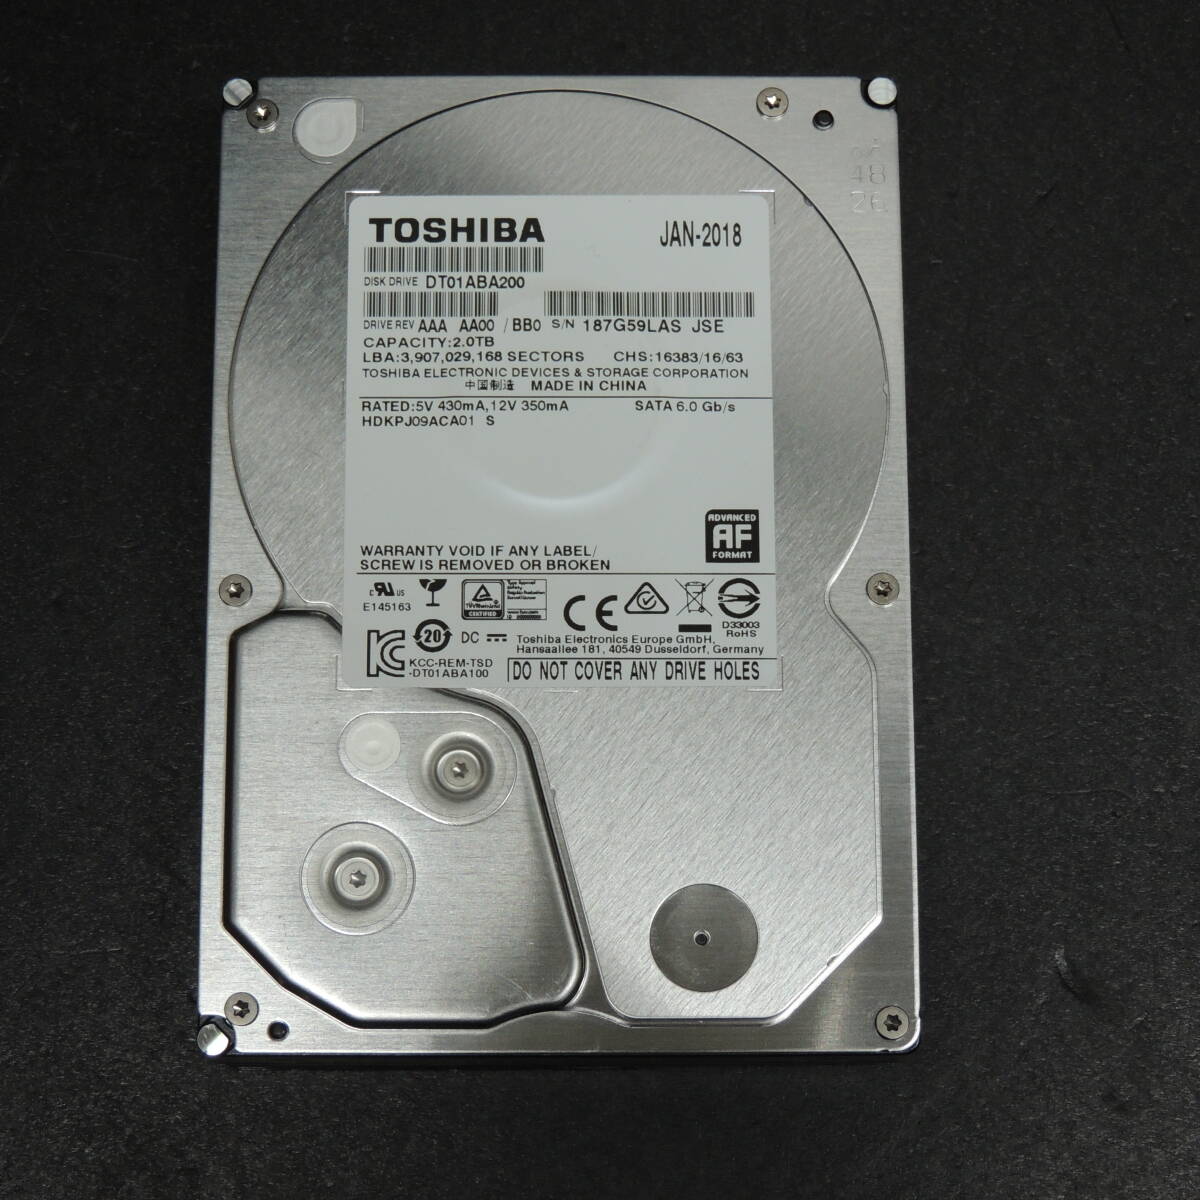 【検品済み】TOSHIBA 2TB HDD DT01ABA200 (使用6033時間) 管理:イ-100_画像1